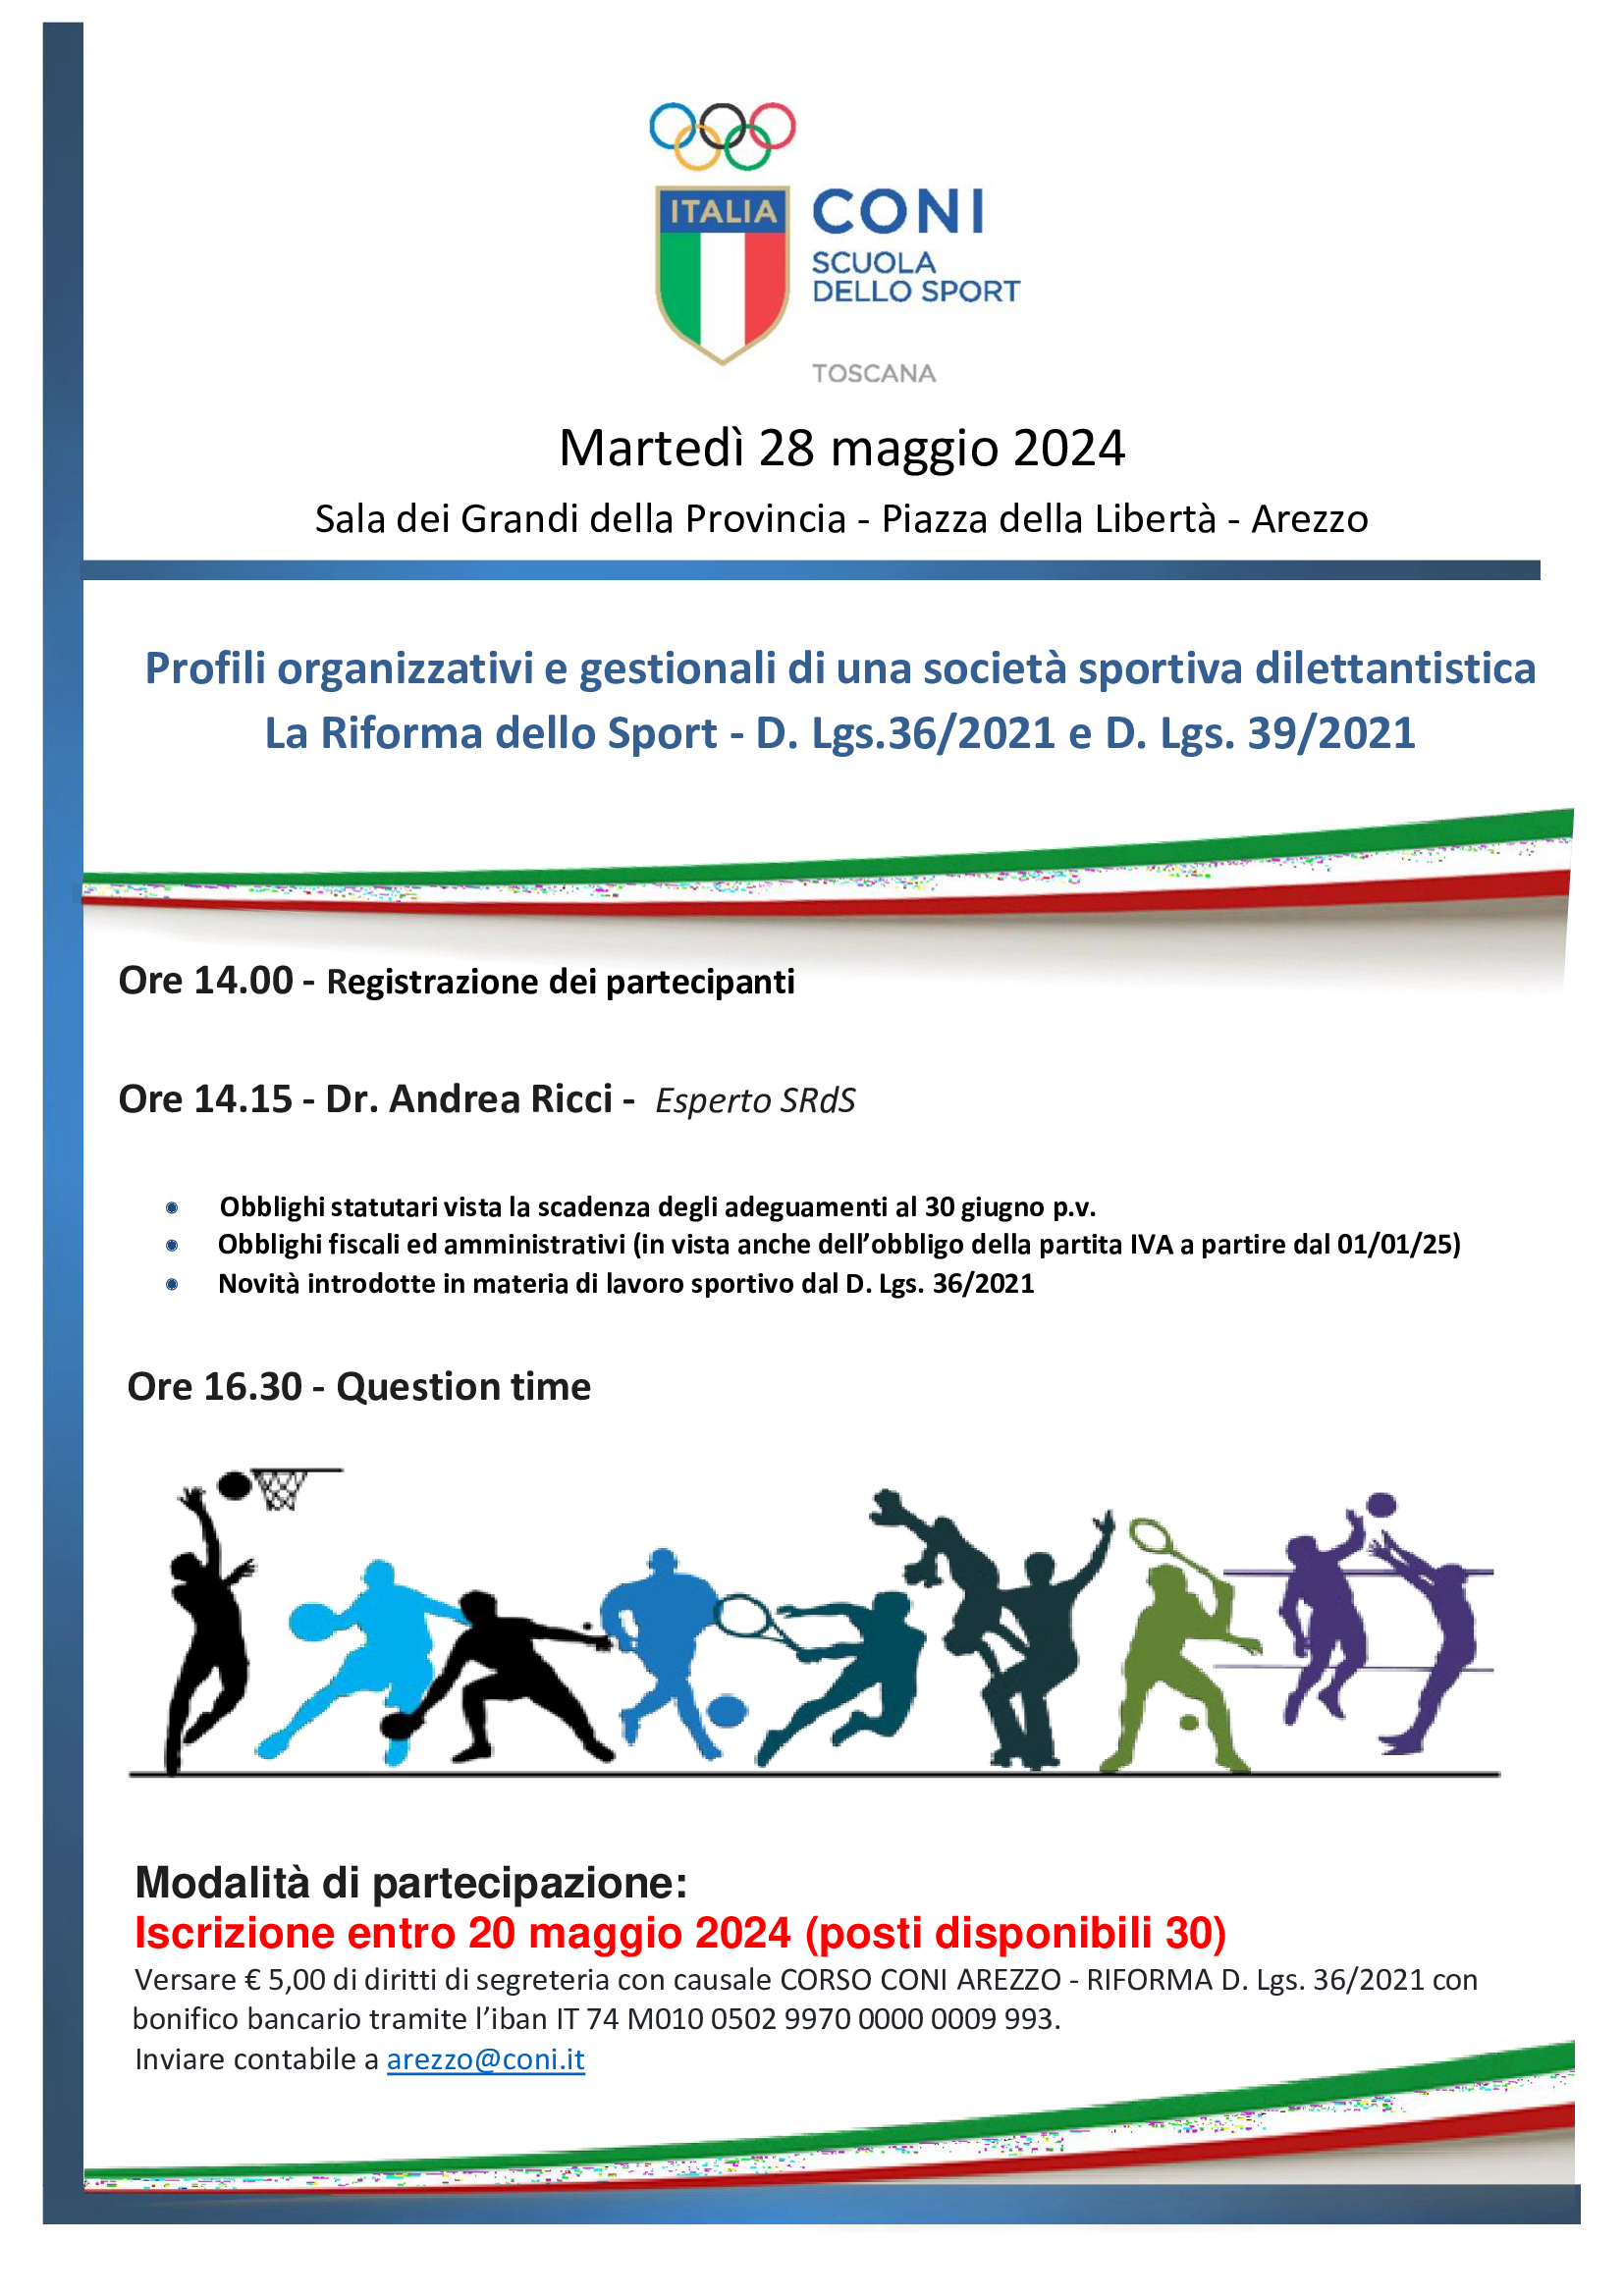 PROFILI ORGANIZZATIVI E GESTIONALI DI UNA SOCIETA' SPORTIVA DILETTANTISTICA - Arezzo